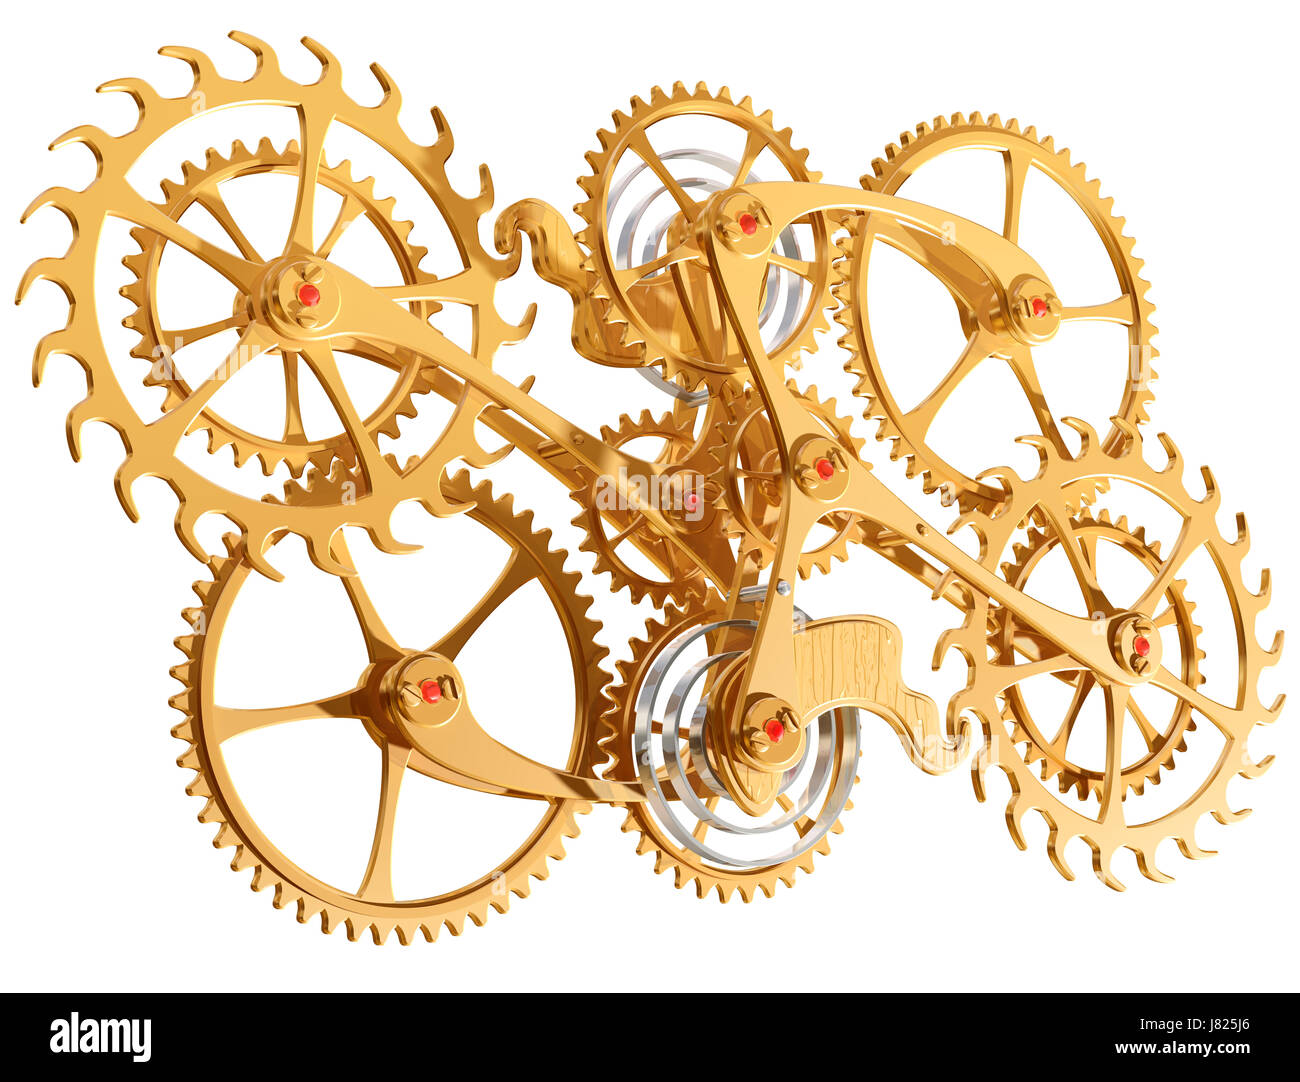 Ingranaggio di ingegneria di orologeria meccanica di precisione il mandrino ruota di moto cog Foto Stock